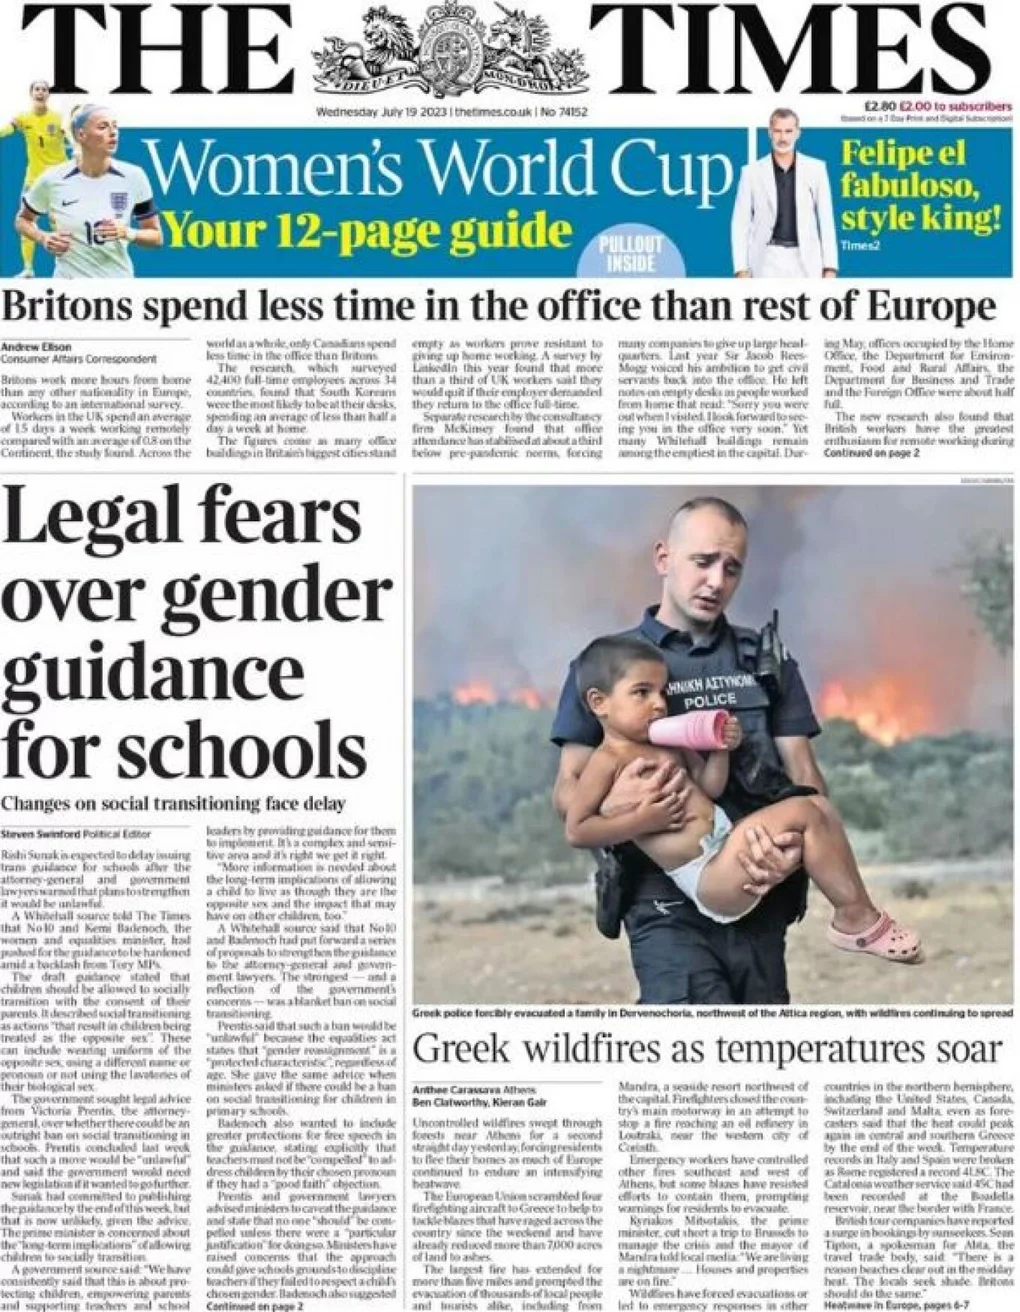 Πρωτοσέλιδο στις εφημερίδες της Αγγλίας ο αστυνομικός που κουβαλούσε στην αγκαλιά του παιδί στη Μάνδρα (Pics)